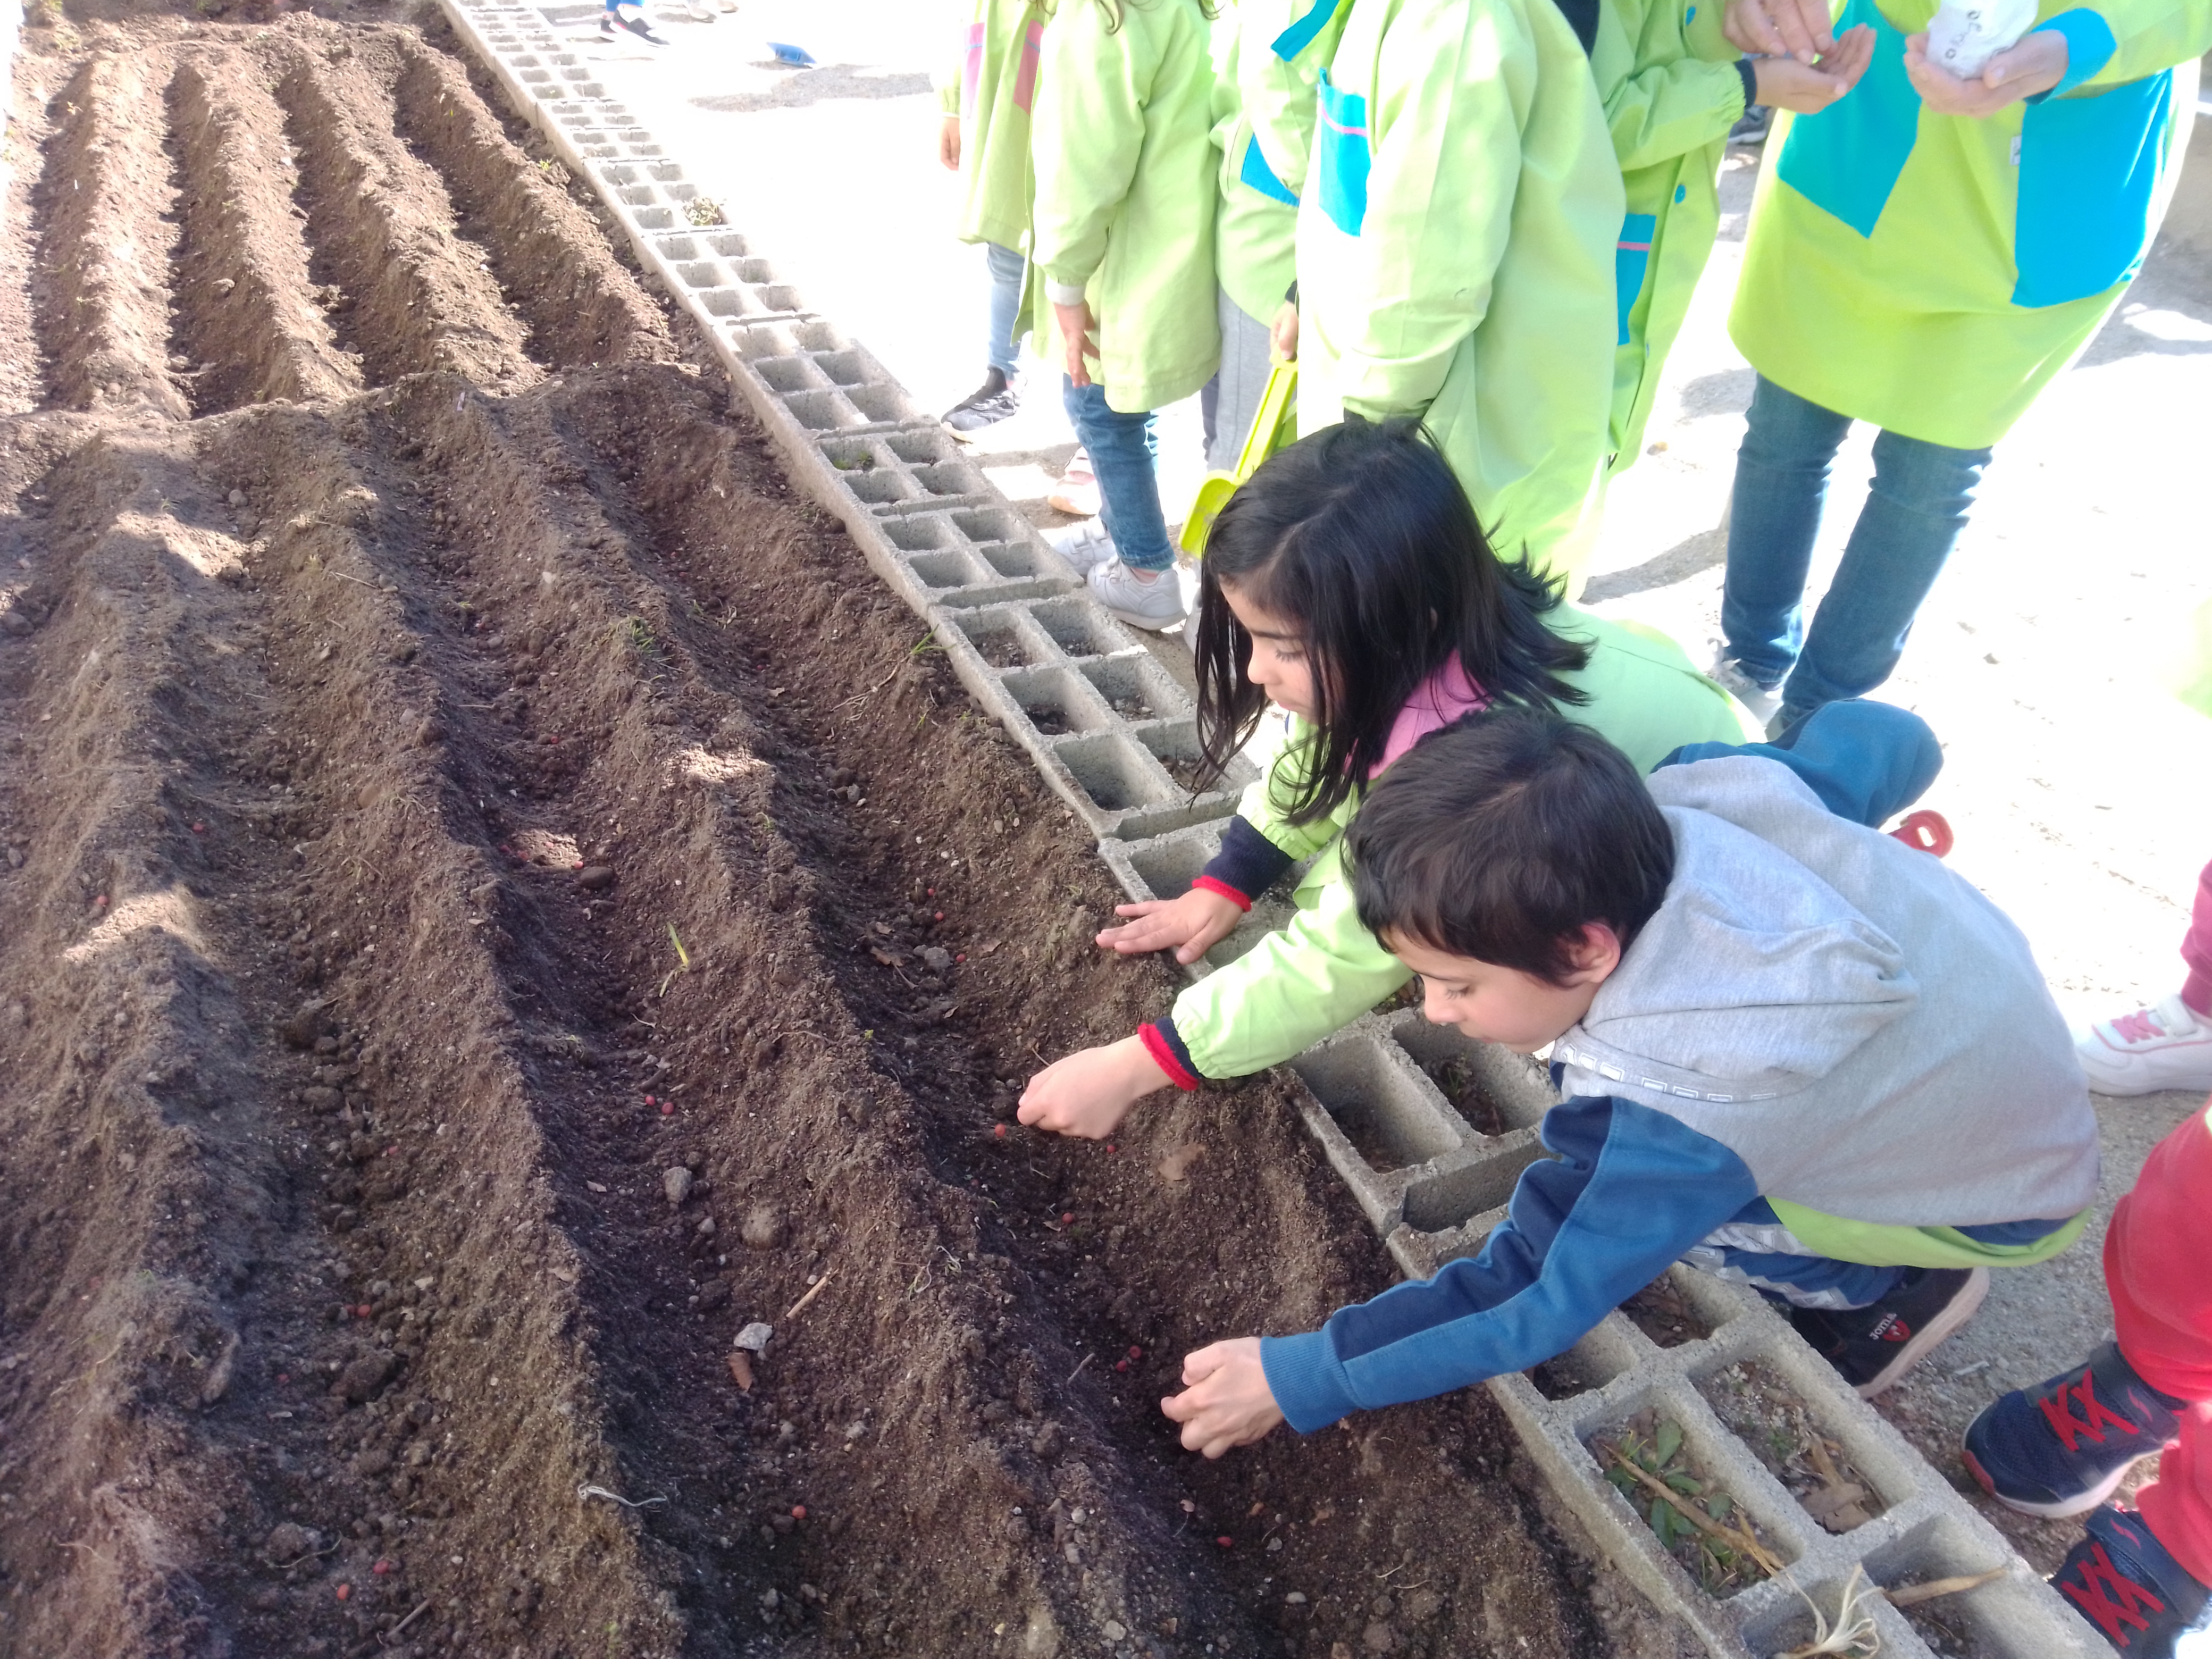 as crianças ajudaram a tirar as pedras e pequenas raízes para colocar as sementes...